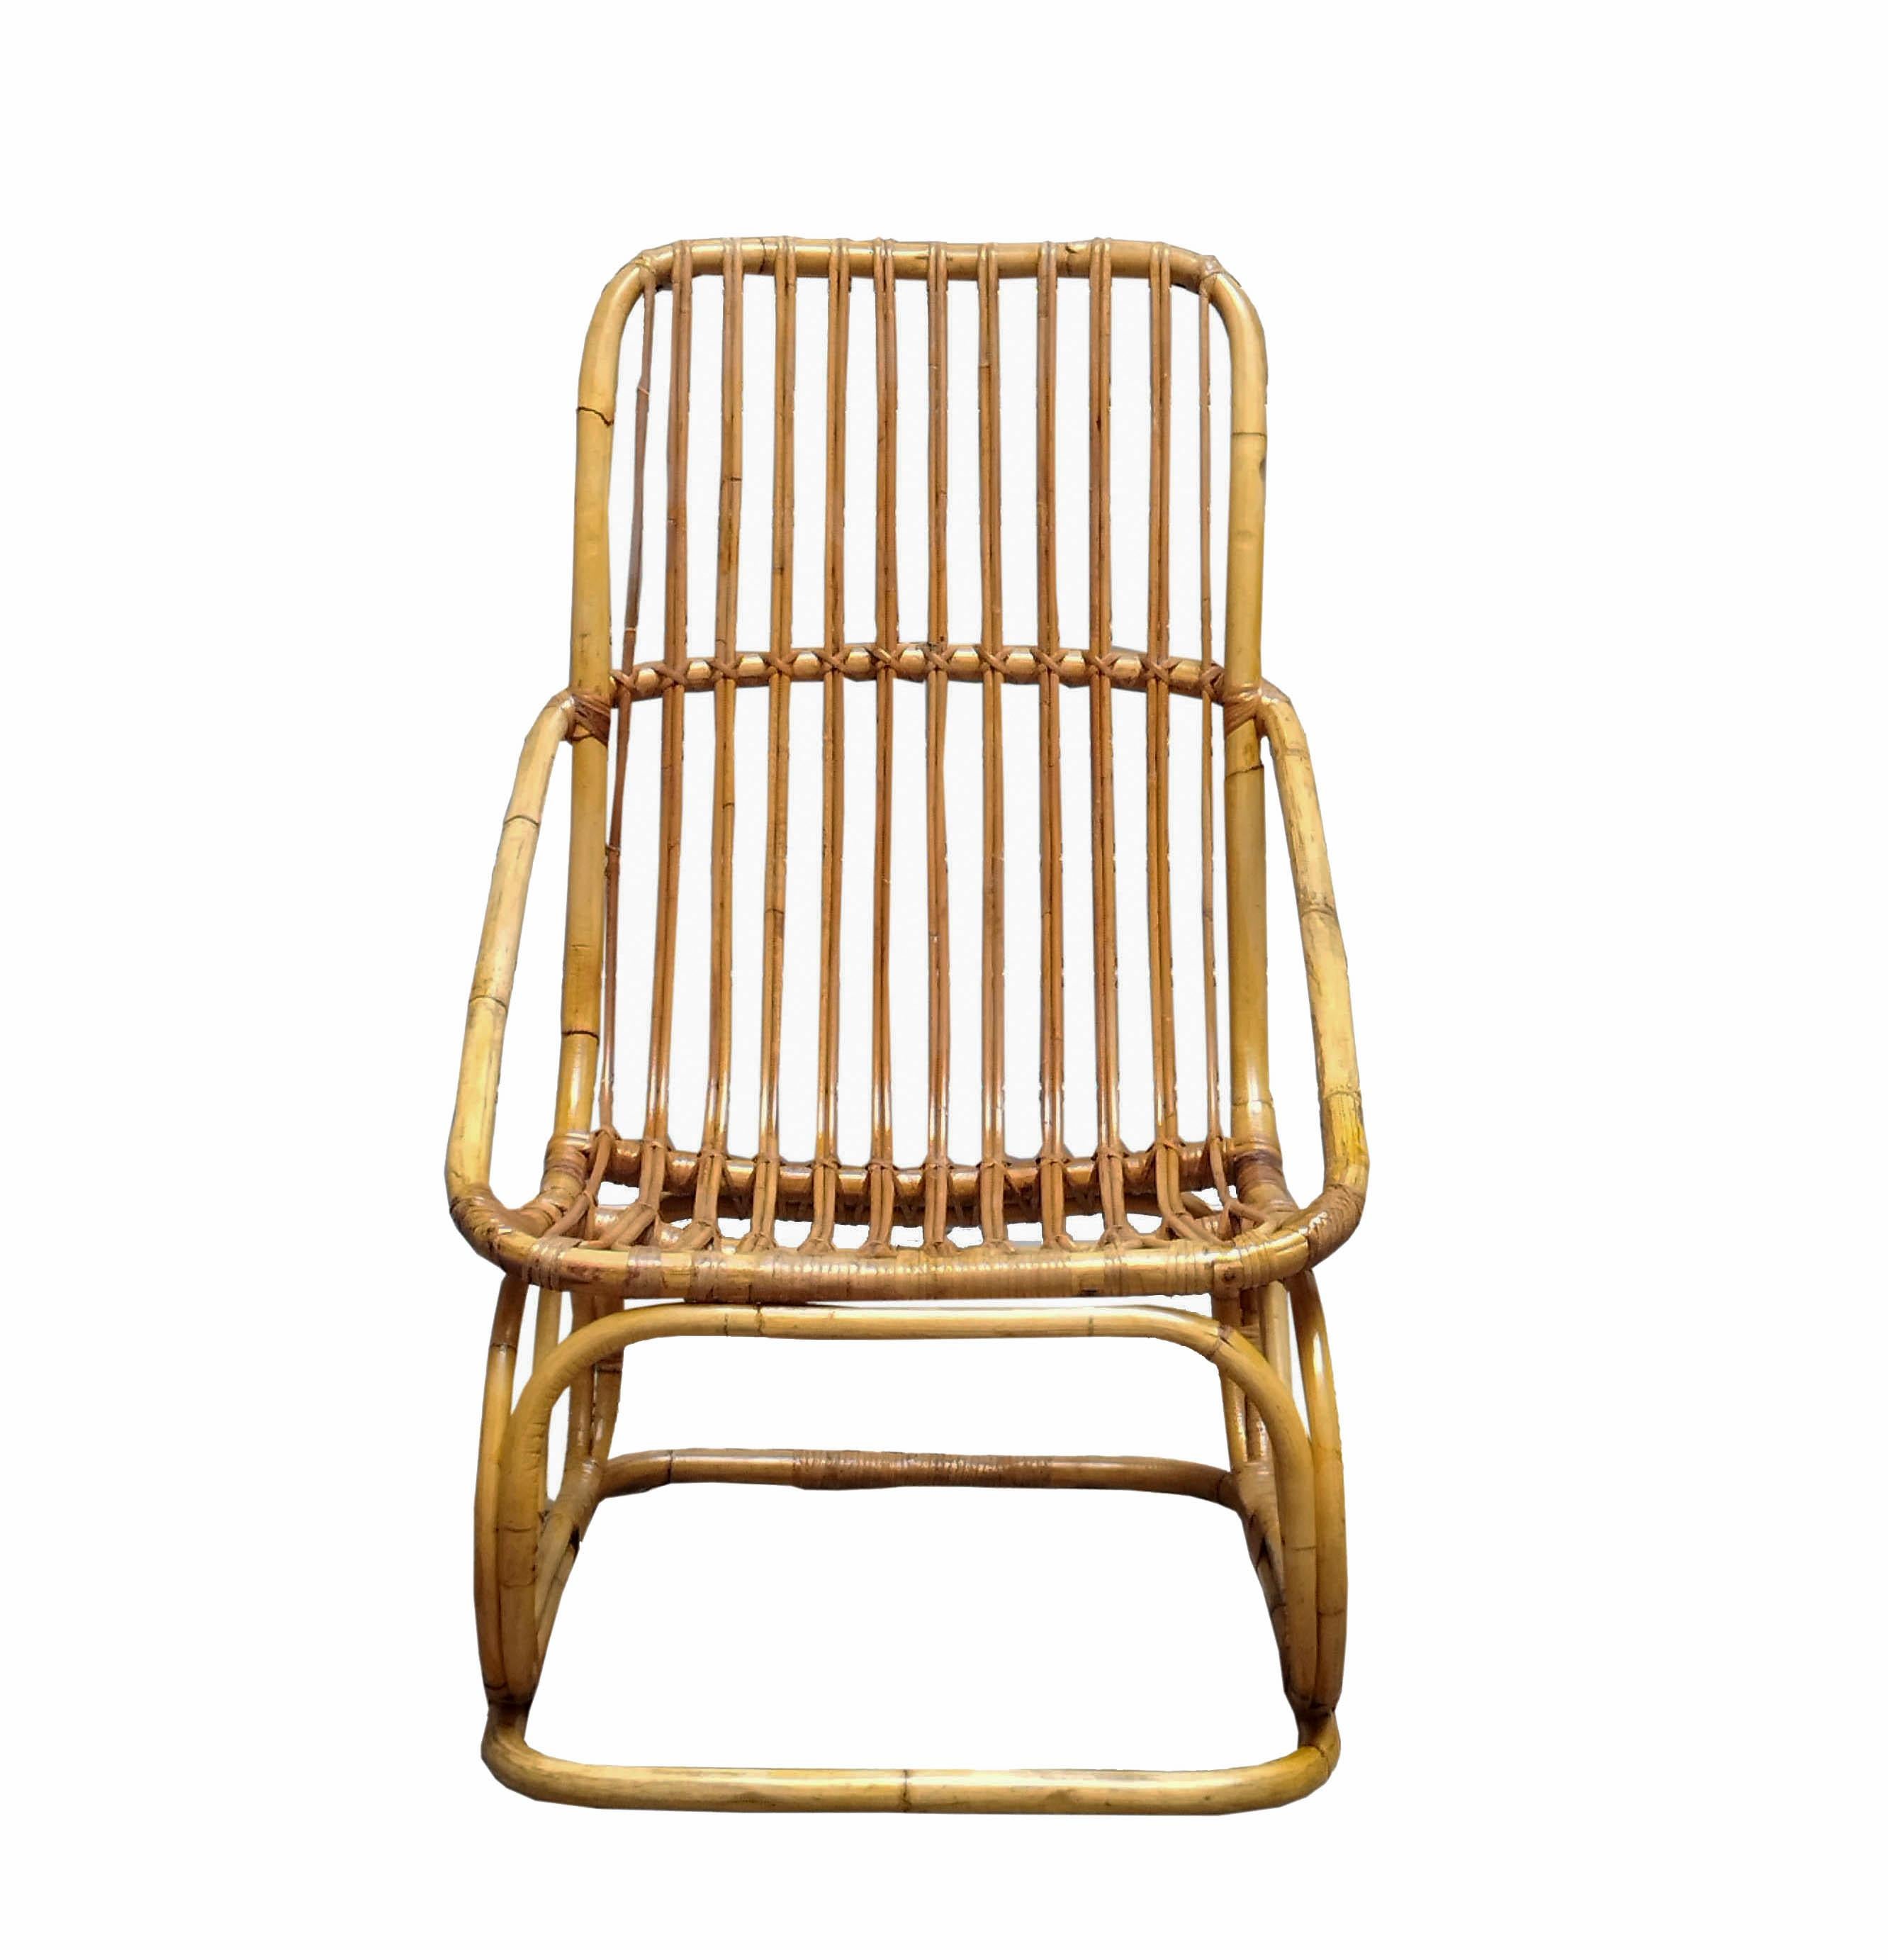 Elegant fauteuil en rotin des années 1960 attribué à Tito Agnoli. Tito/One est né à Lima dans une famille italienne. D'abord architecte puis designer, il a collaboré avec de nombreuses entreprises italiennes. Certaines de ses pièces font partie de